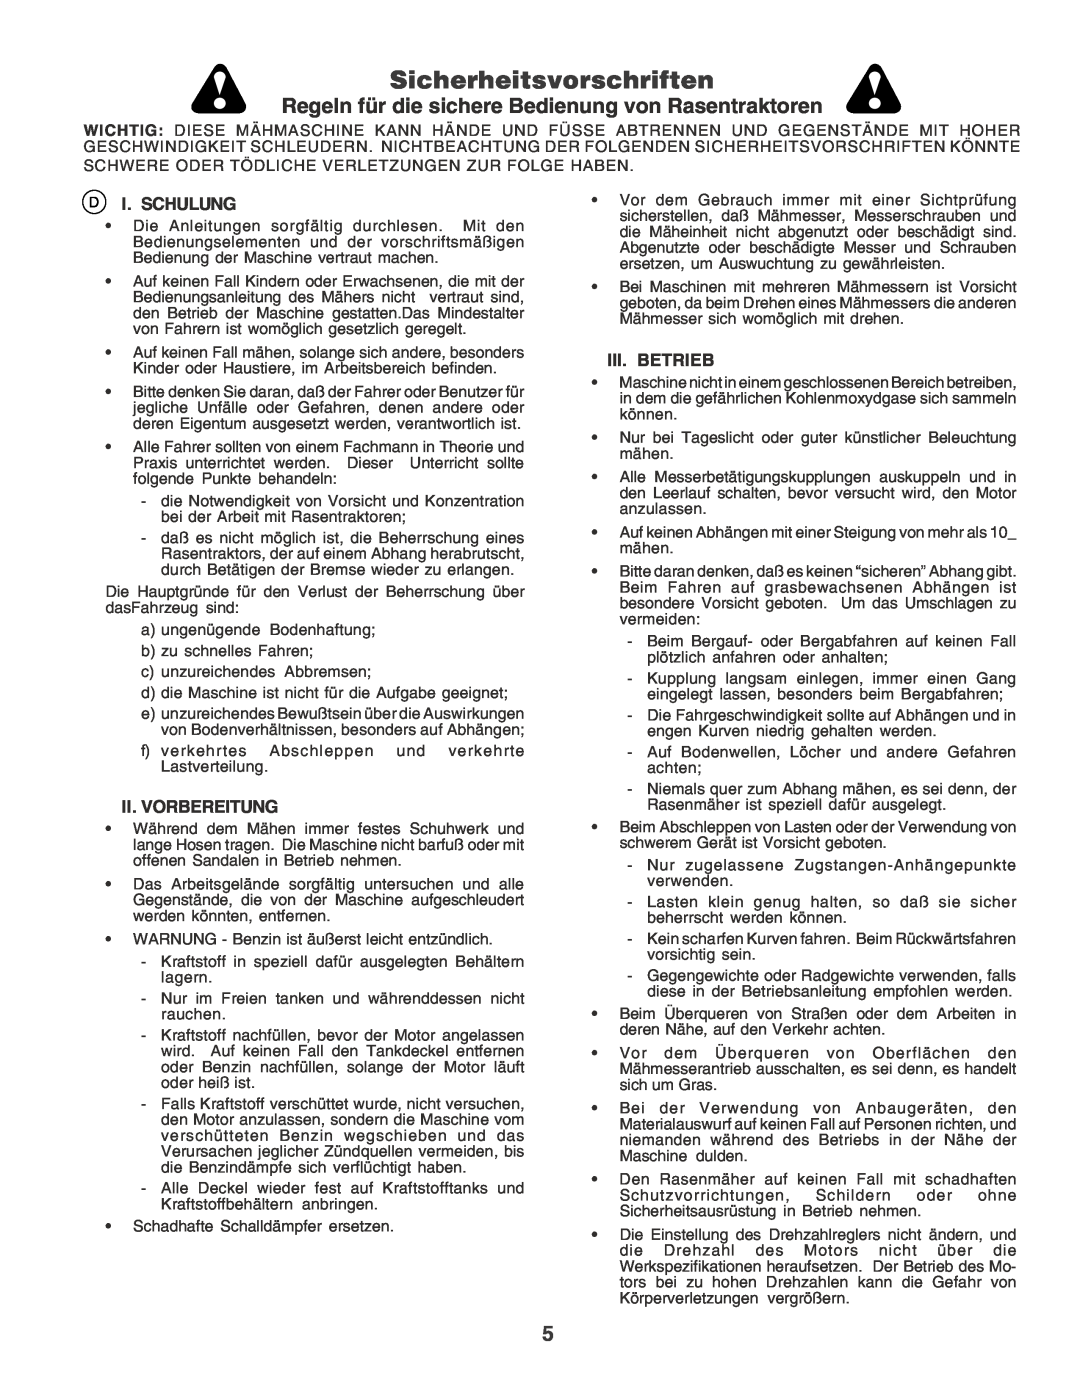 Husqvarna YT155 Sicherheitsvorschriften, Regeln für die sichere Bedienung von Rasentraktoren, I. Schulung, Iii. Betrieb 